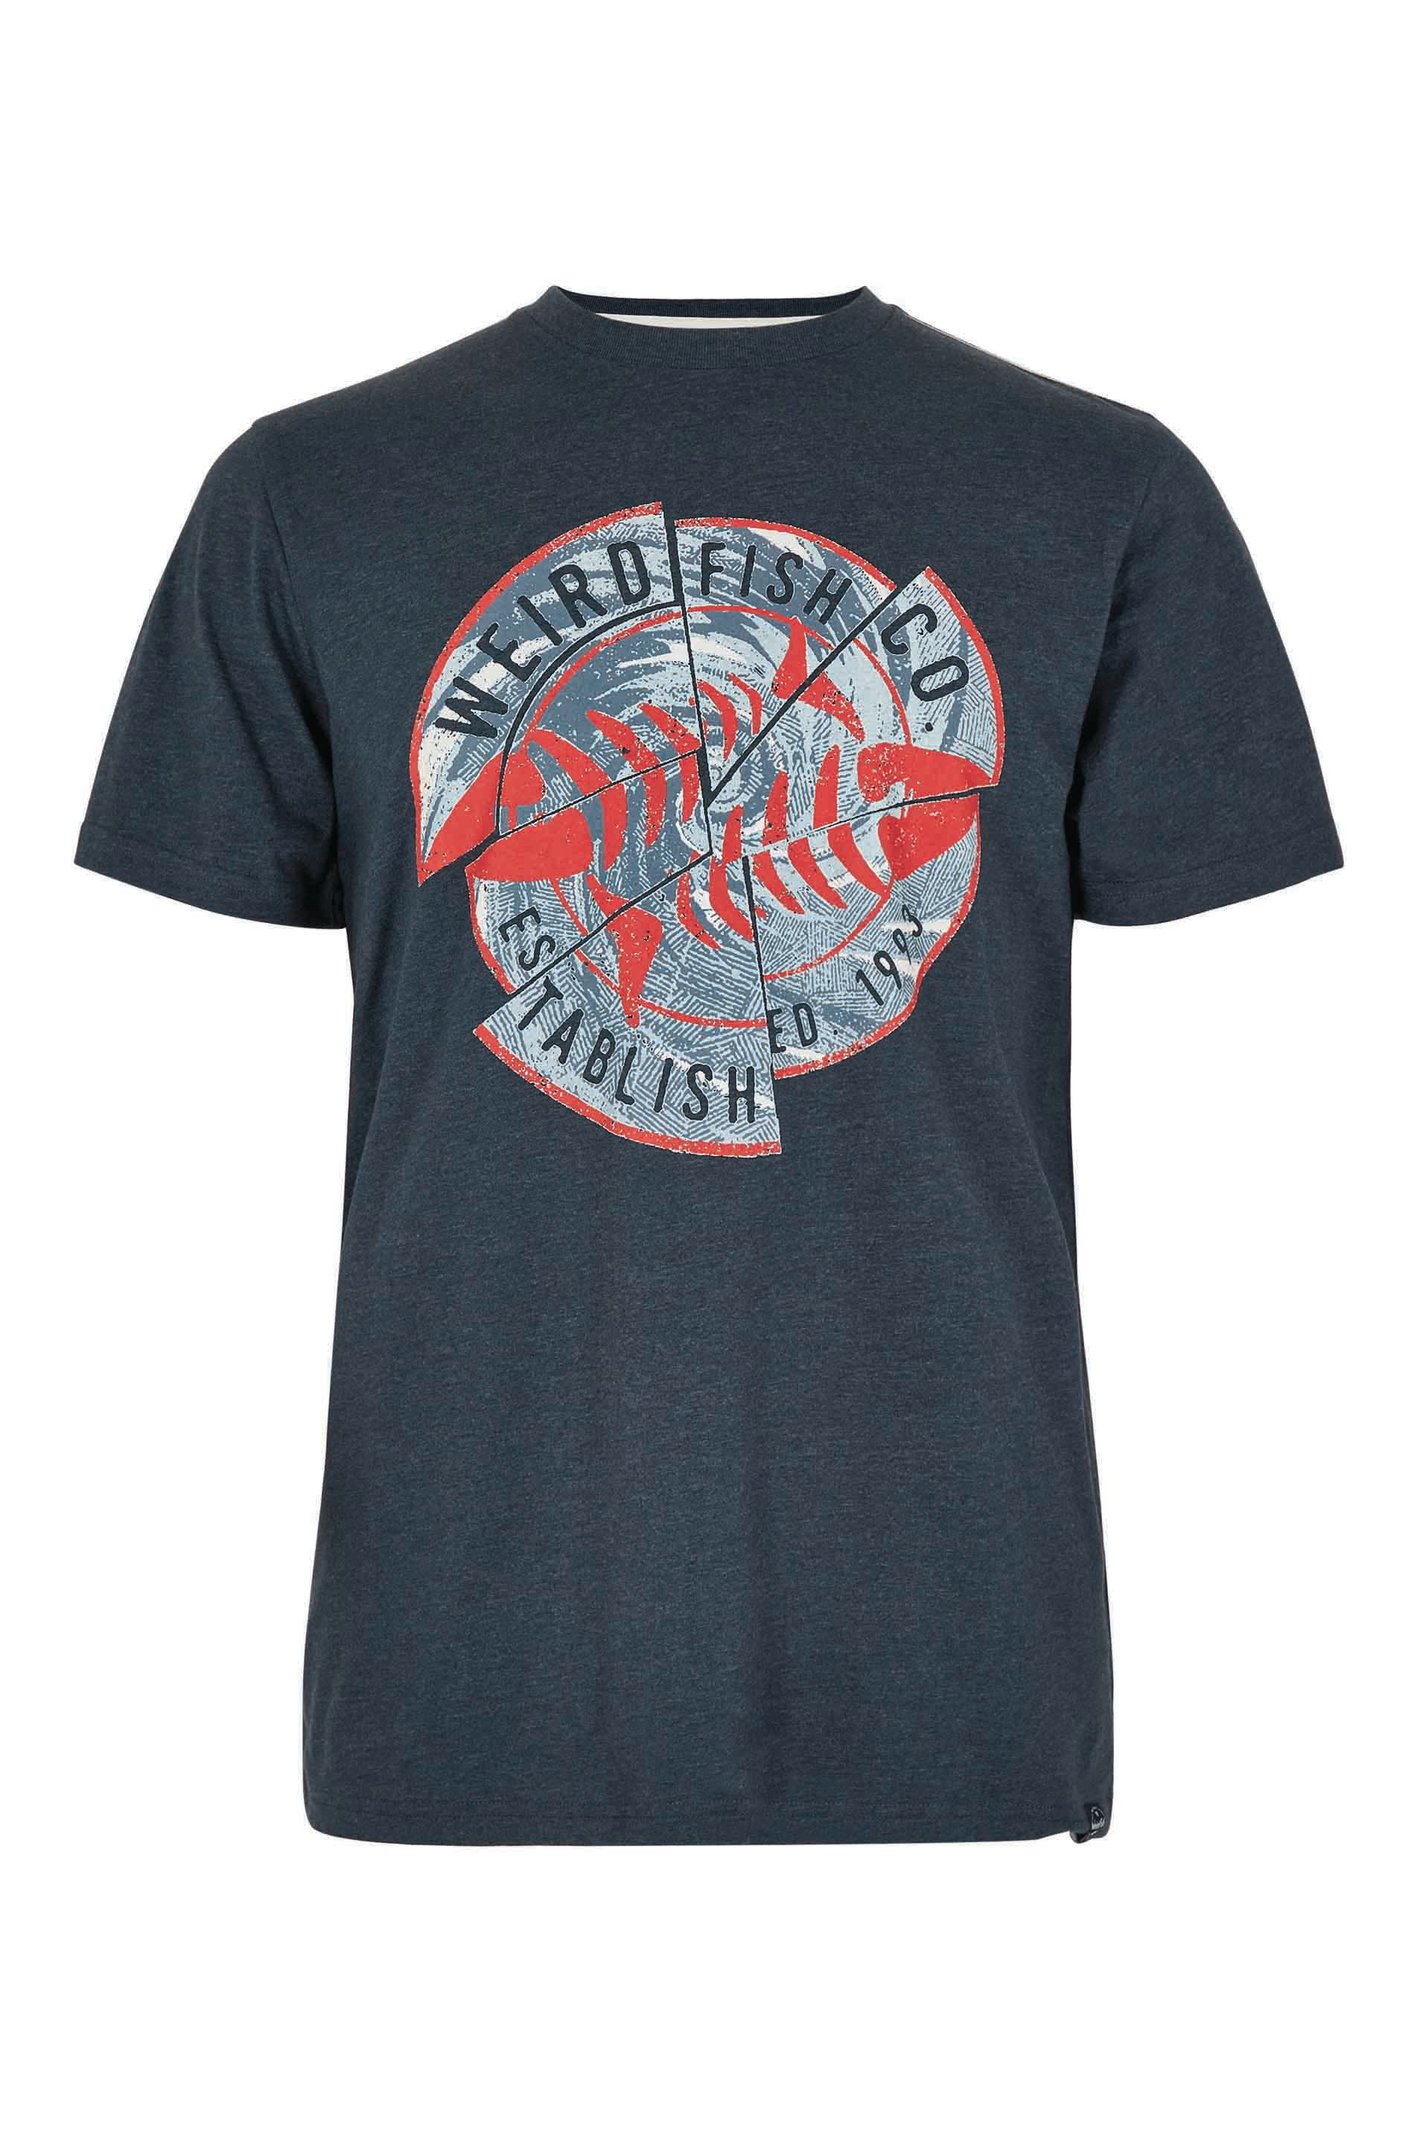 Weird Fish Vortex Eco Graphic T-Shirt Navy Size 4XL